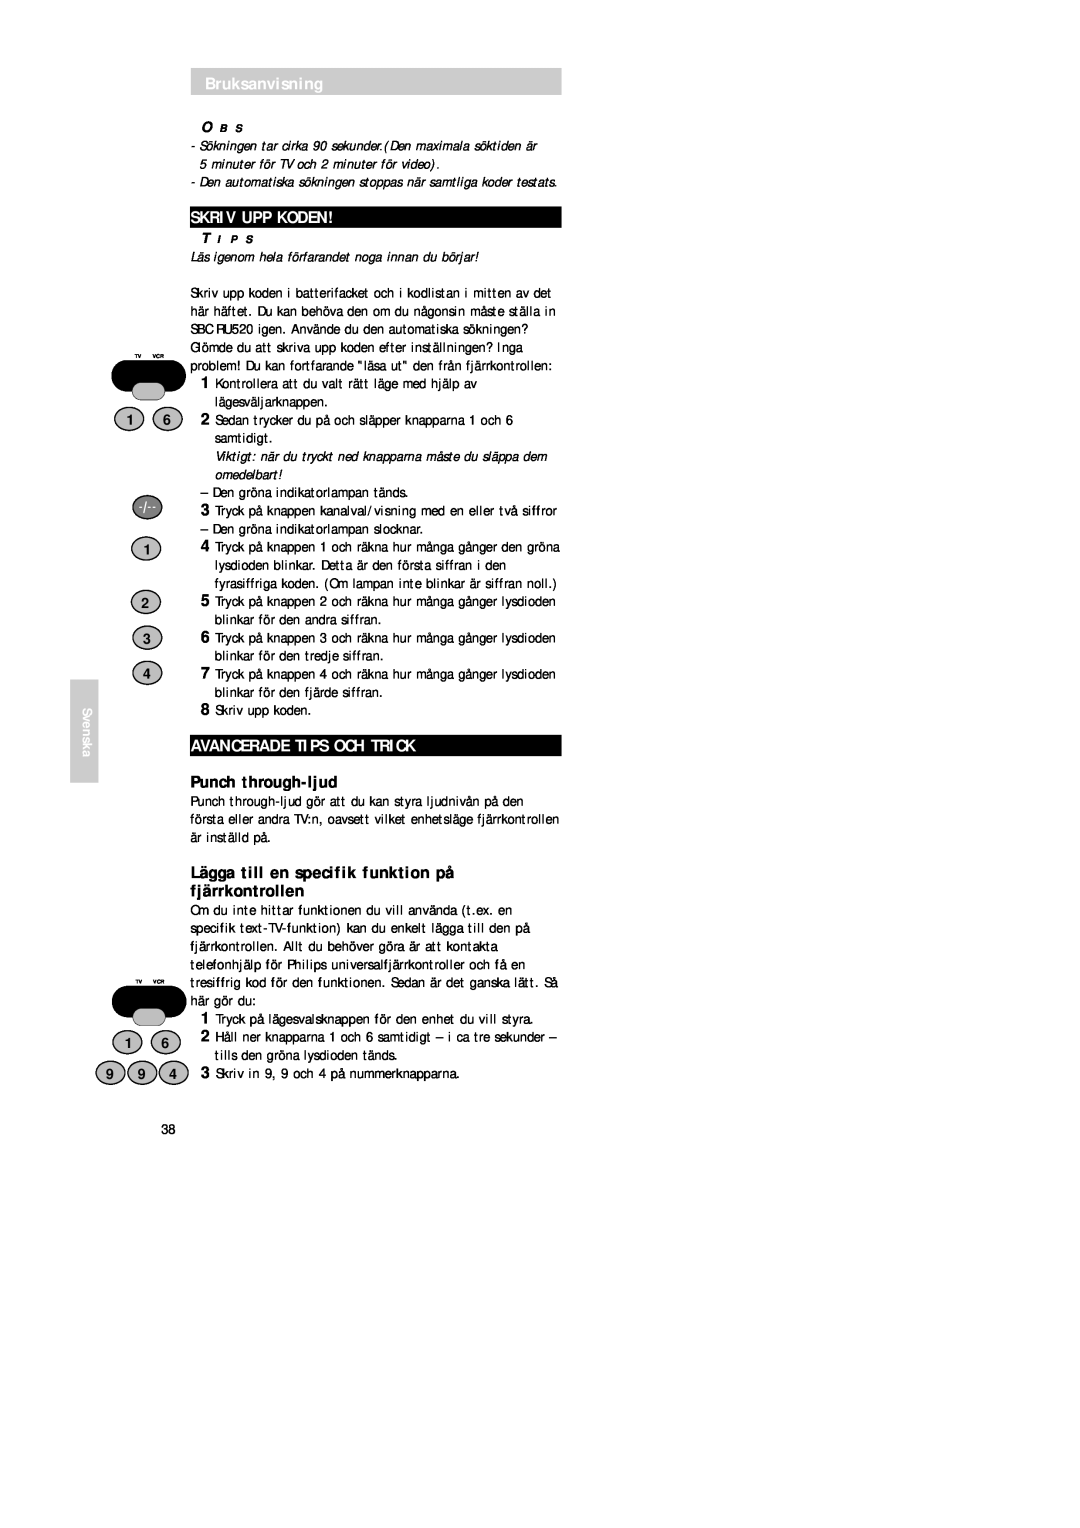 Philips SBC RU 520 manual Skriv Upp Koden, Avancerade Tips Och Trick, Punch through-ljud, Bruksanvisning, Svenska 